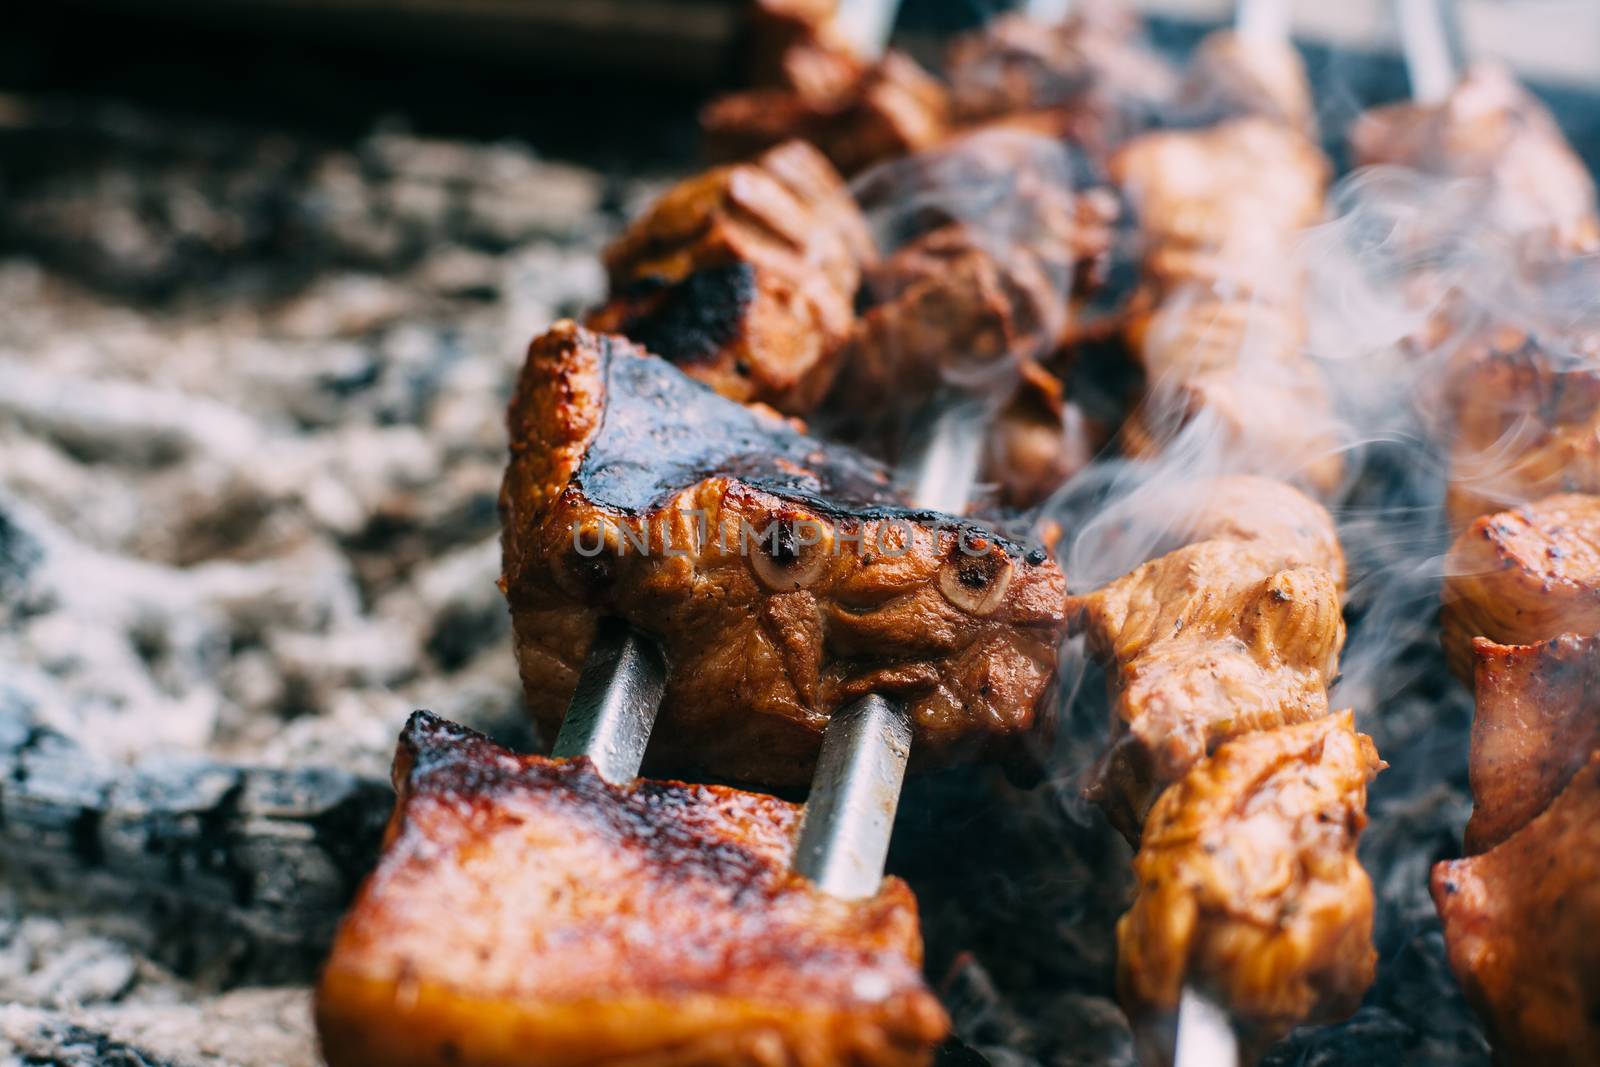 Skewers of pork ribs on a skewer in smoke. Cooking meat in nature.